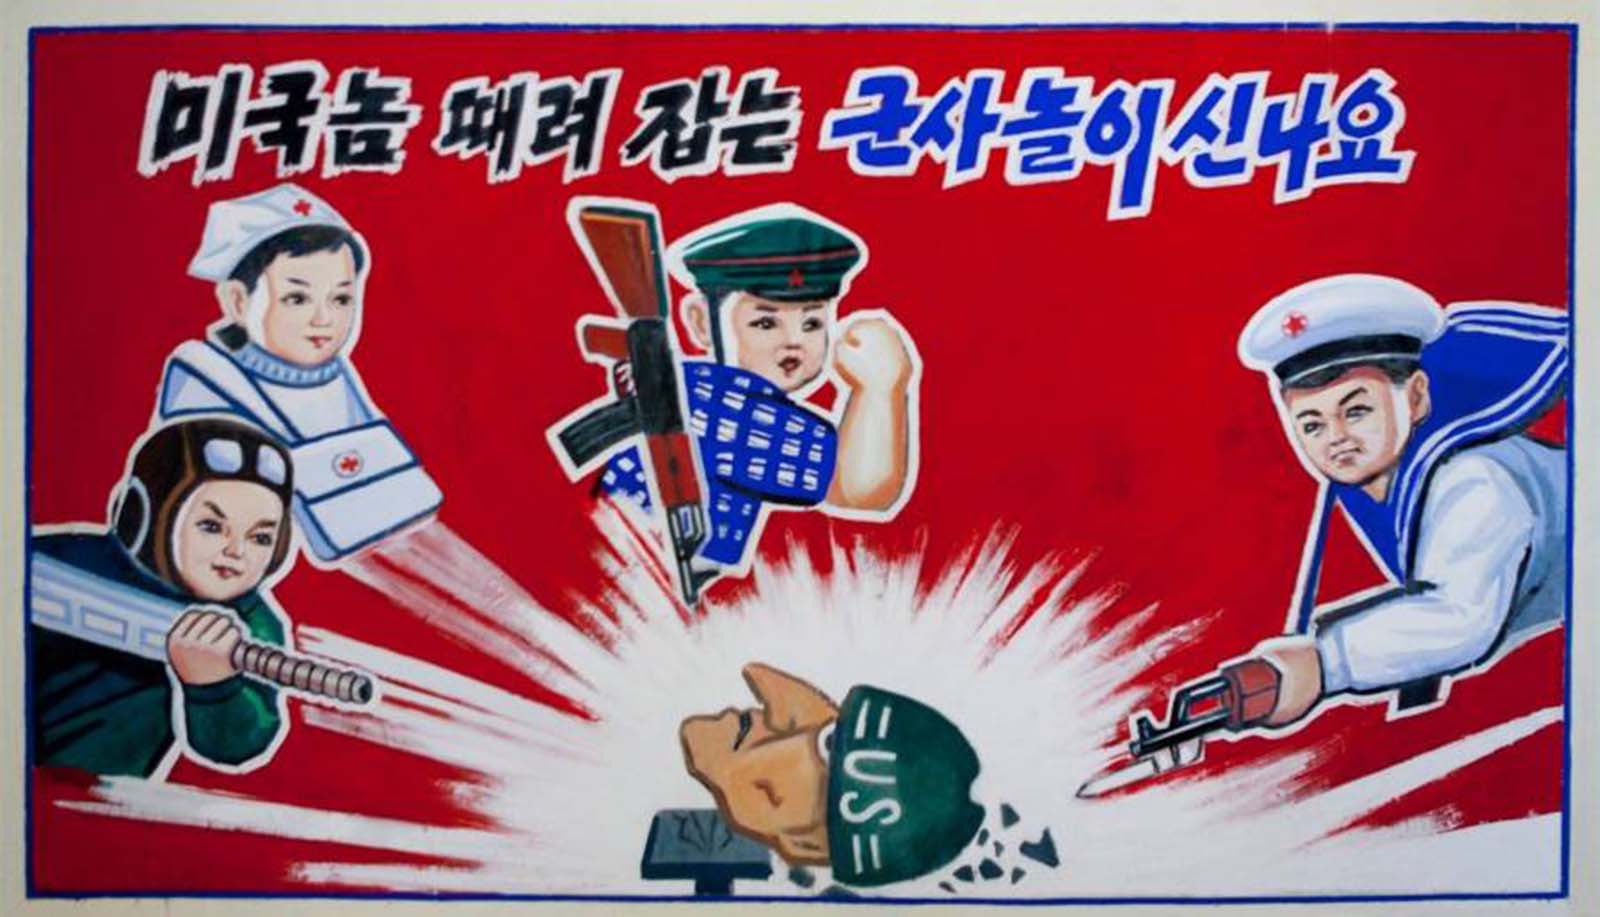 North Korean Anti-American propaganda for children.